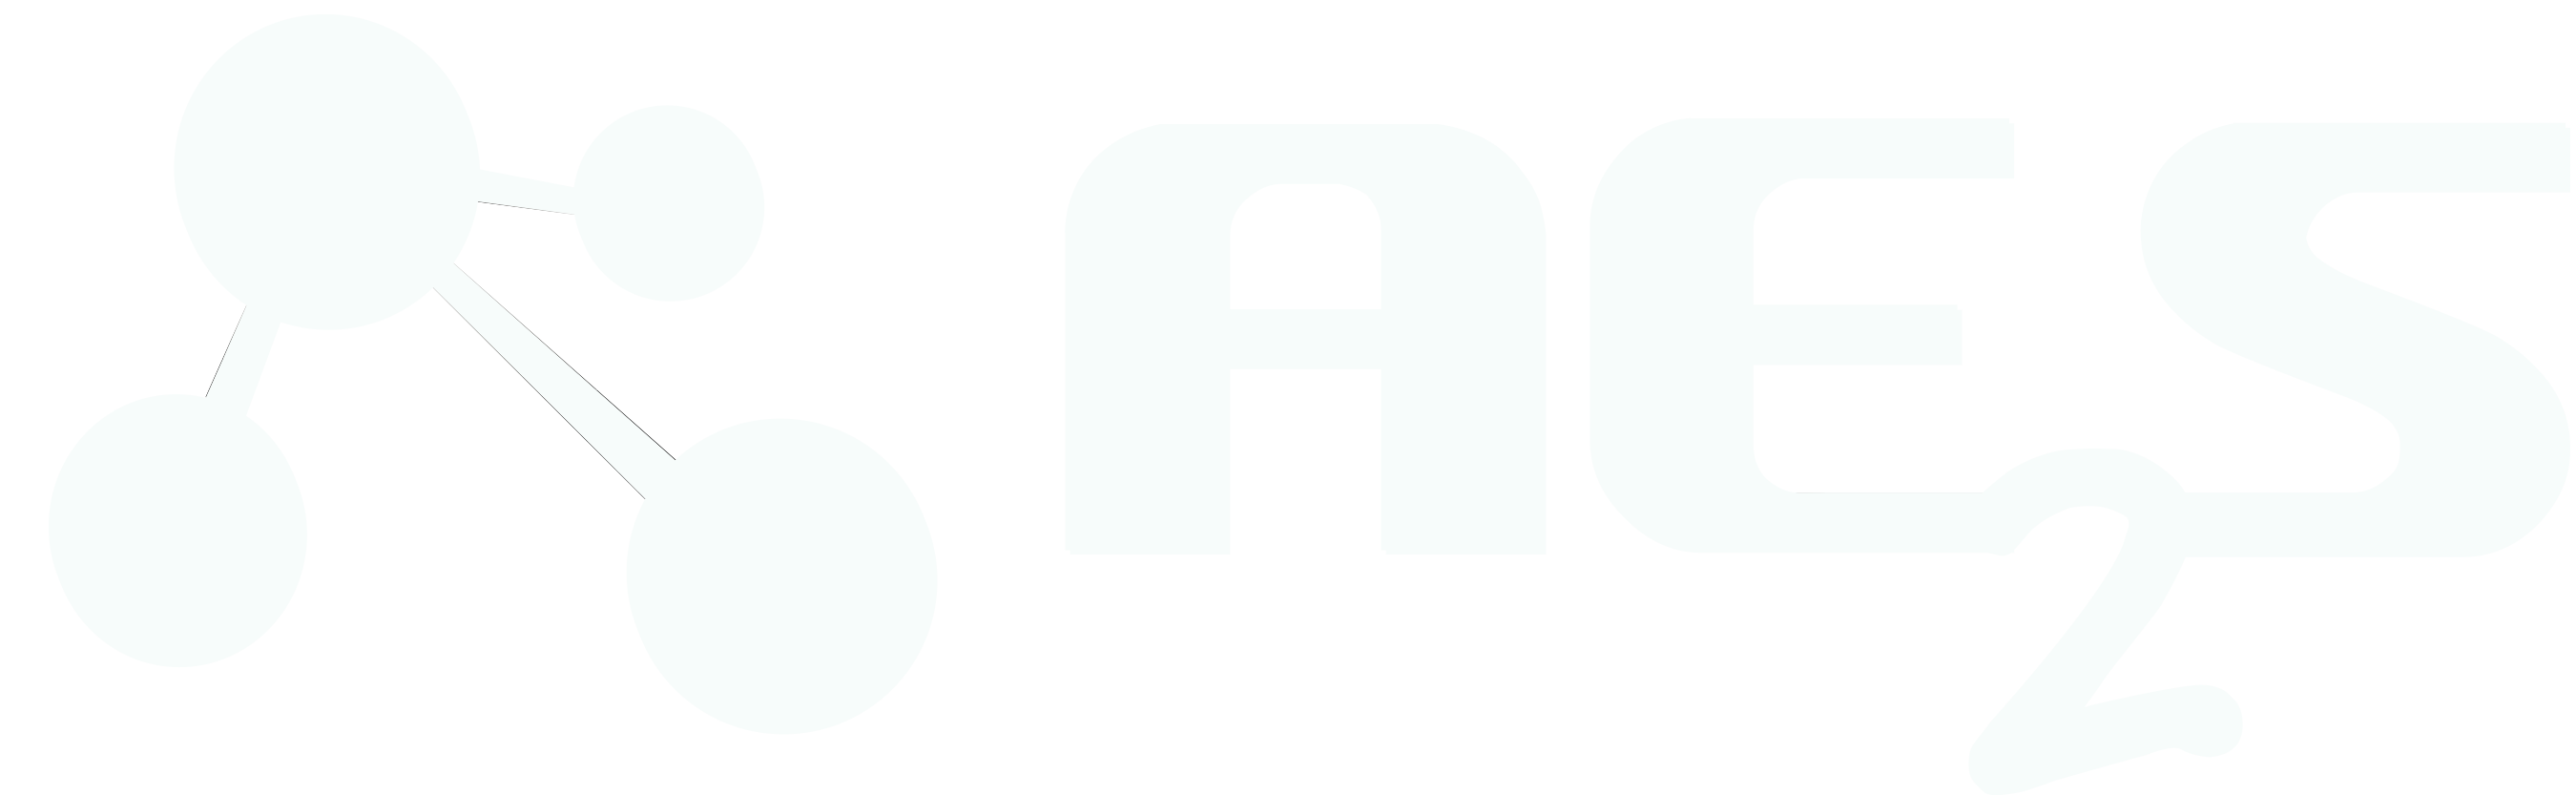 ae2s logo white